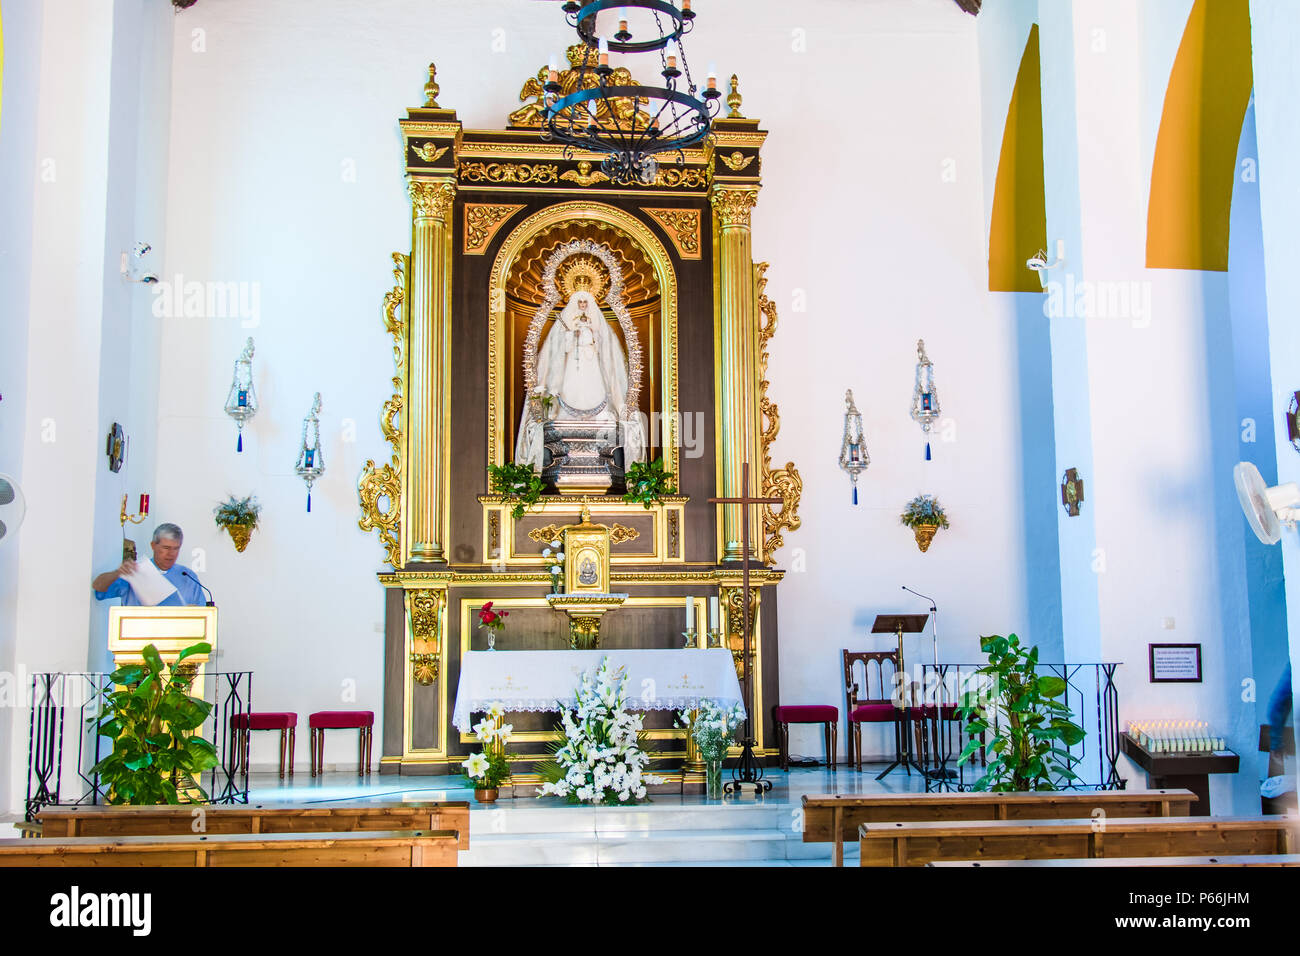 Iglesia de Nuestra Señora de las Maravillas maro catholic church Stock Photo